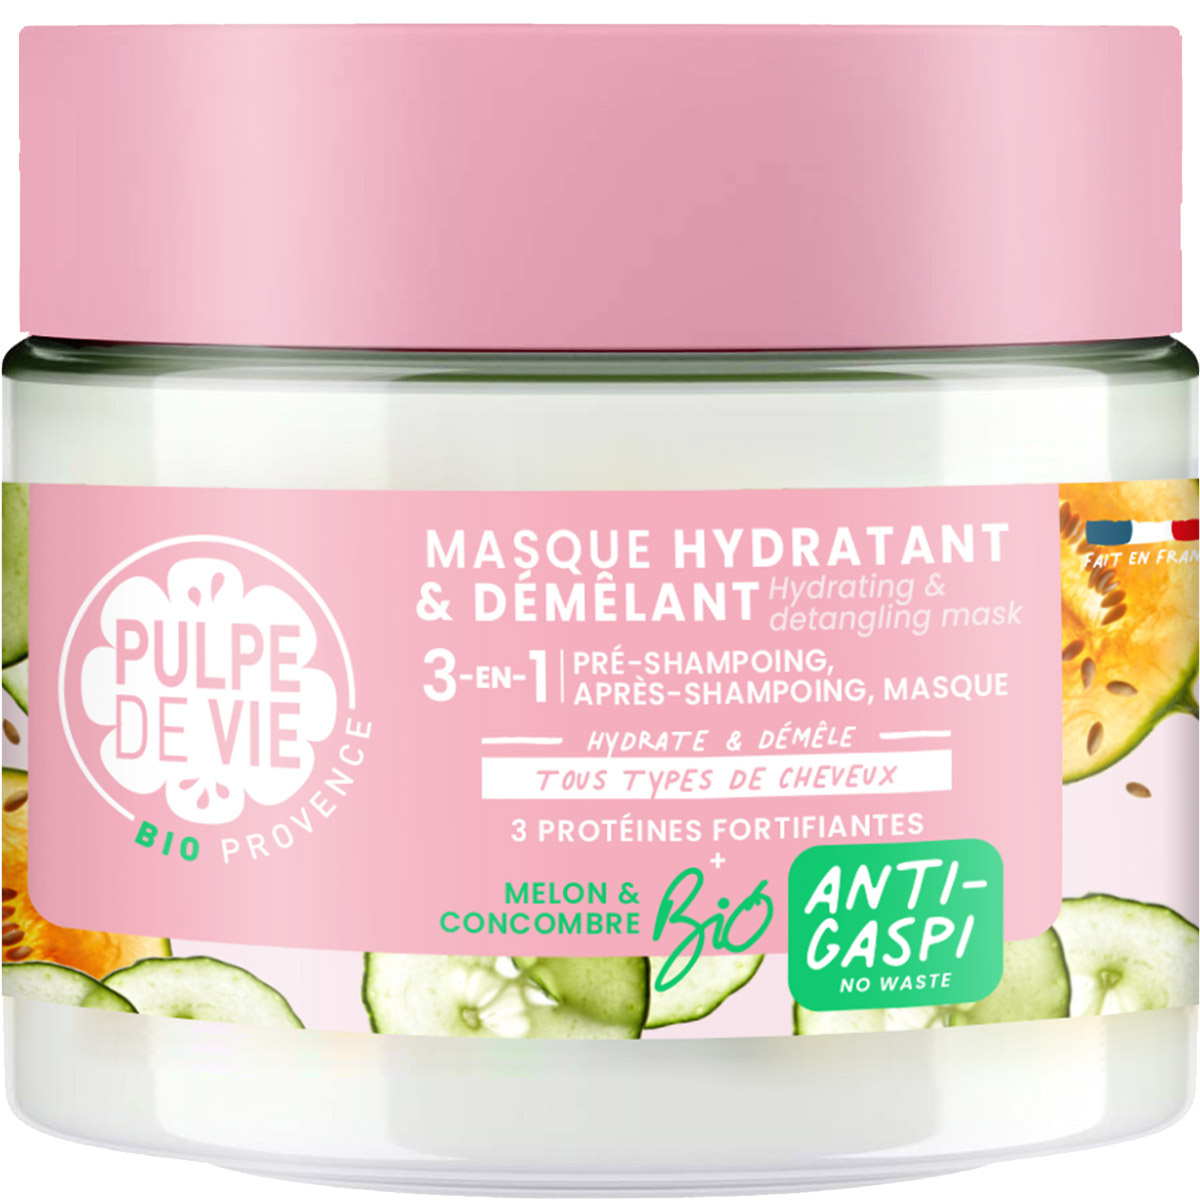 Masque hydratant & démêlant - Melon & concombre - Tous types de cheveux - 300 ml